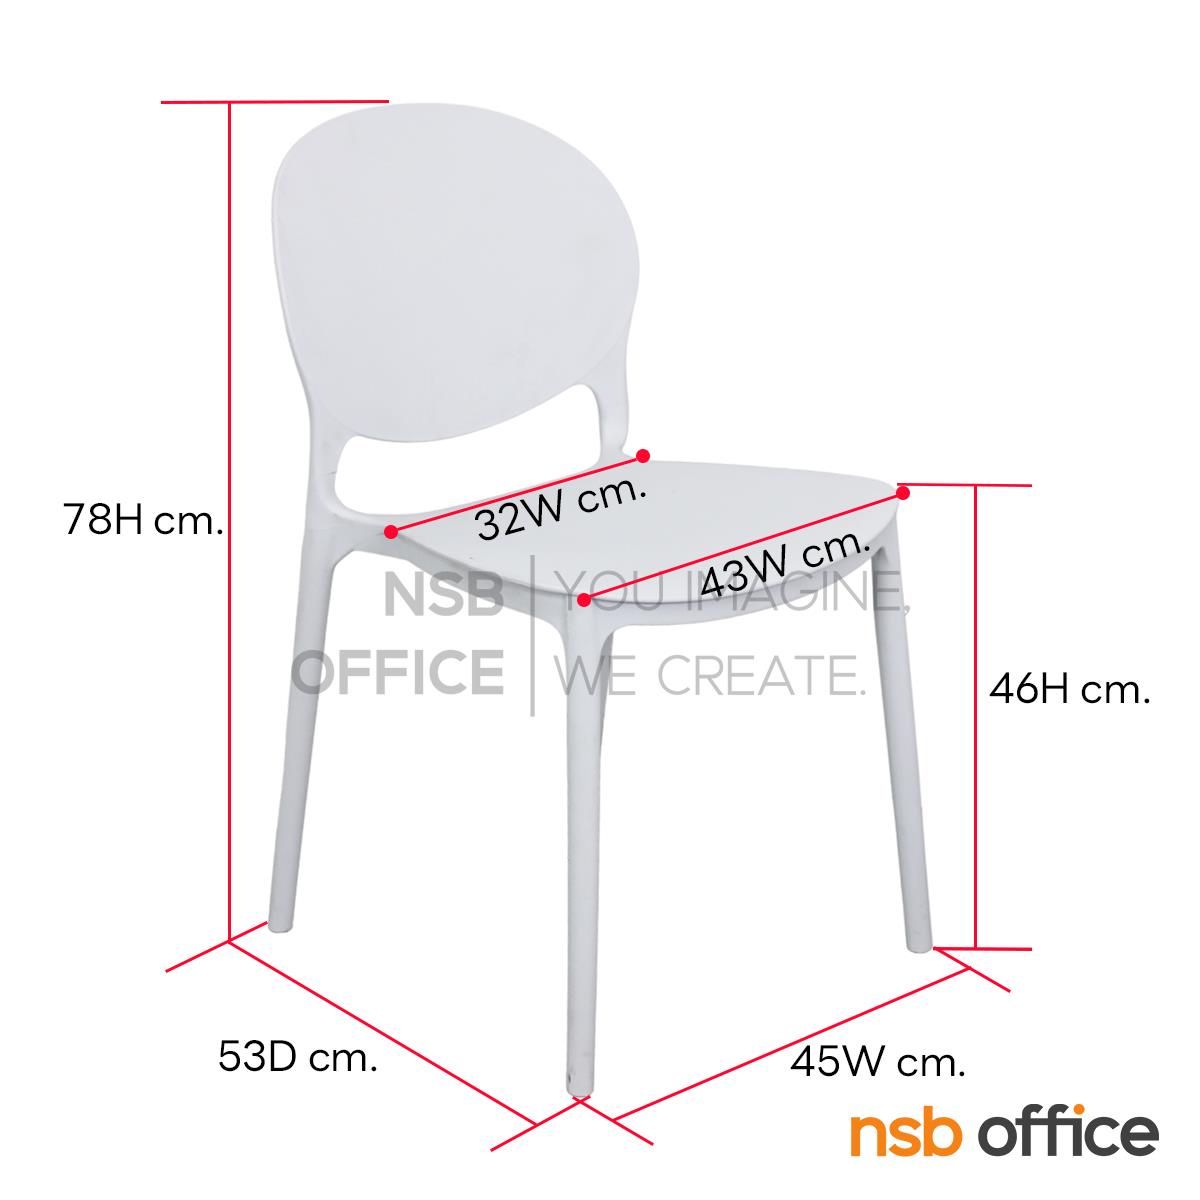 เก้าอี้โมเดิร์นพลาสติก รุ่น Lomy (โลมี่) ขนาด 43W cm.  